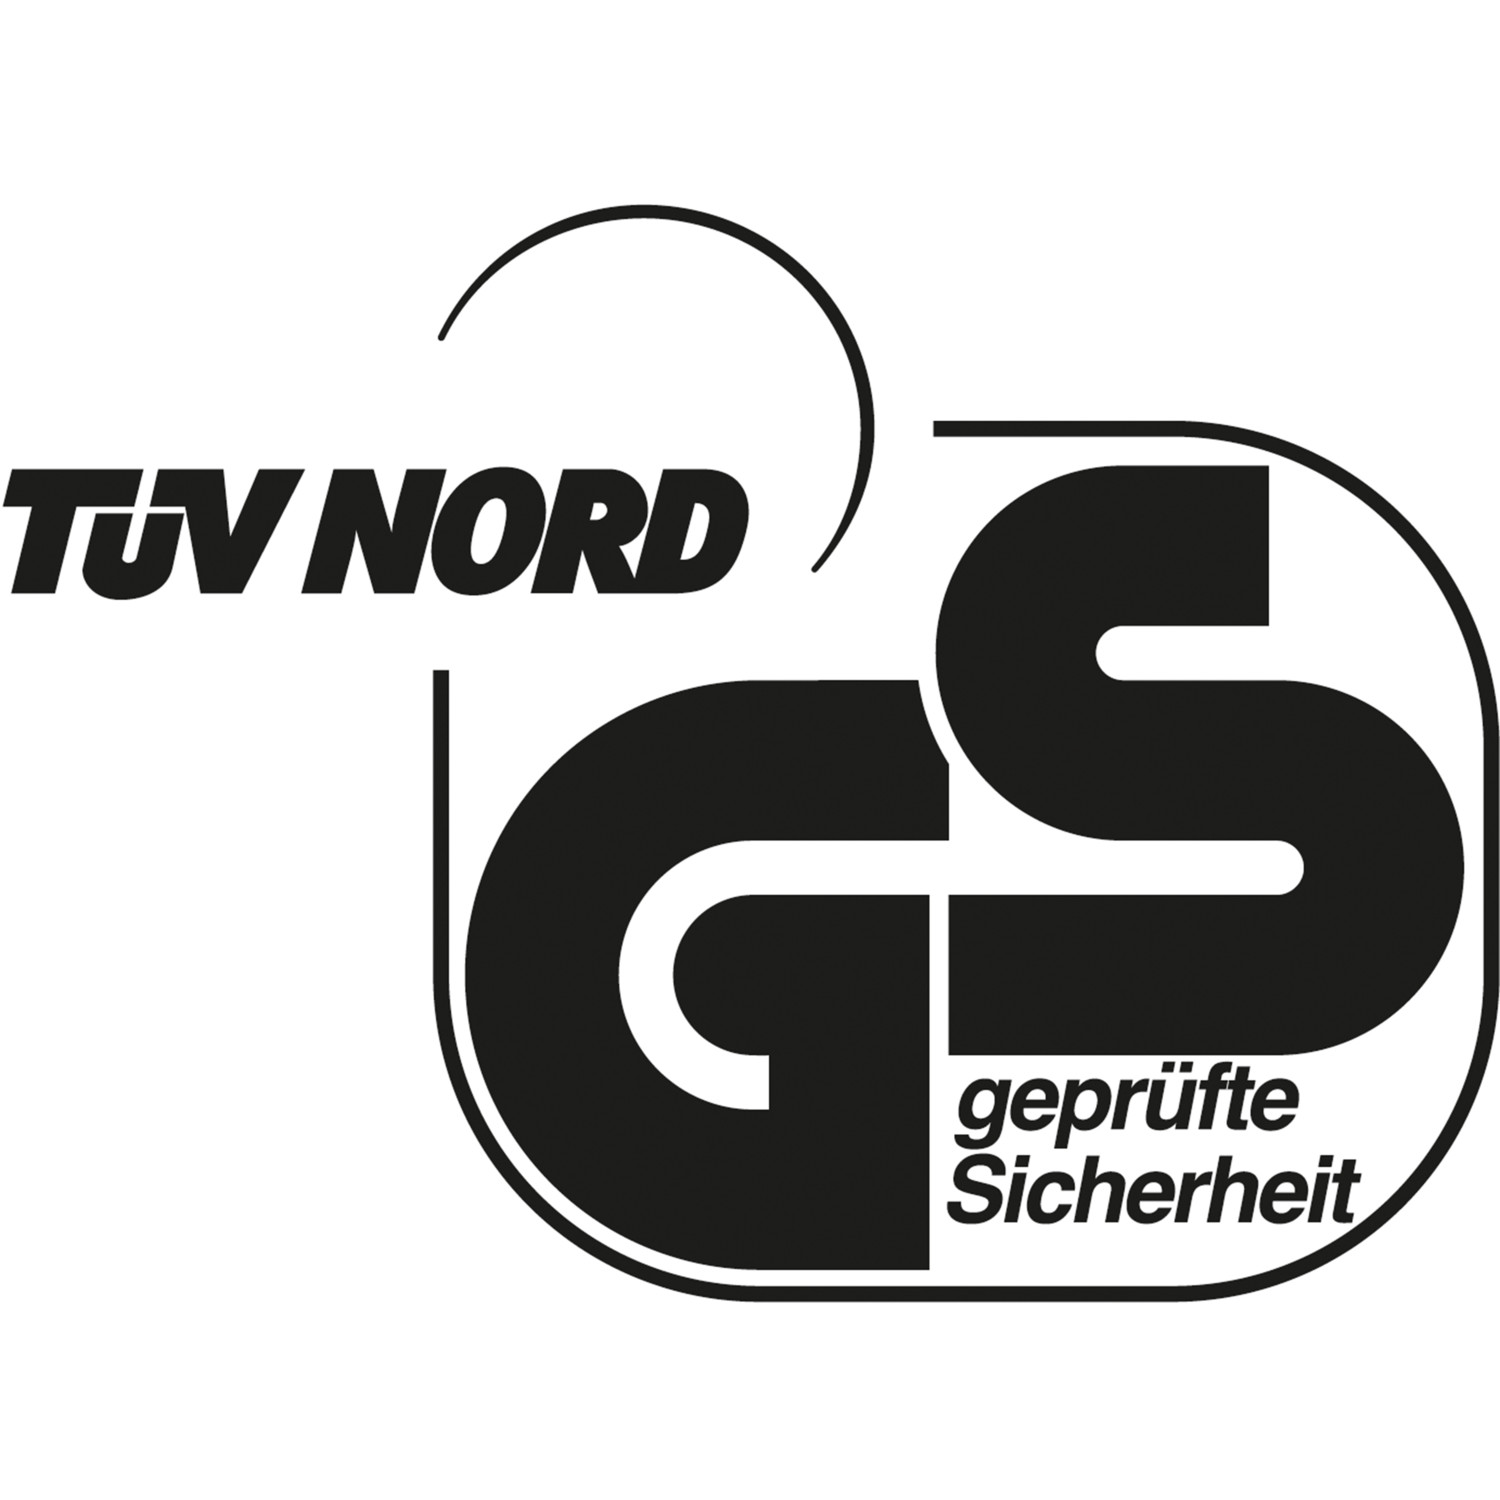 TÜV Nord geprüft nach dem Geräte- und Produktsicherheitsgesetz.